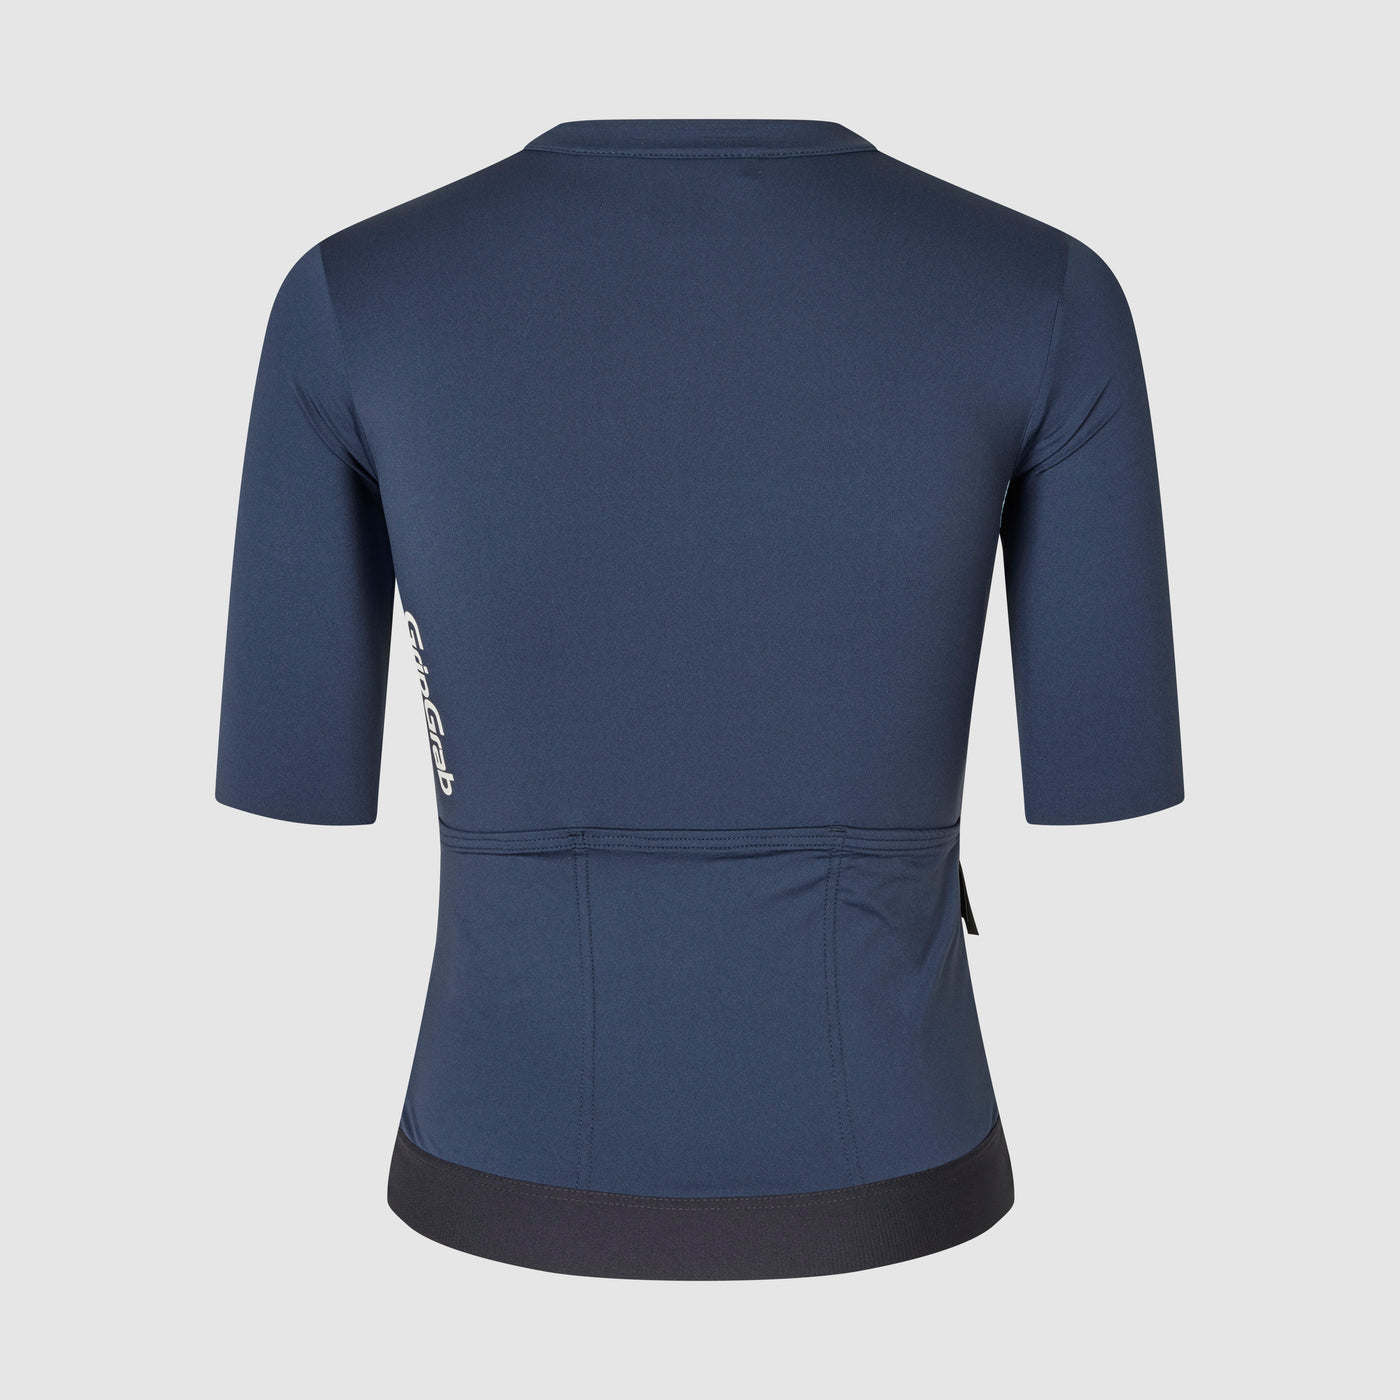 Women's Airflow Lightweight Short Sleeve Jersey